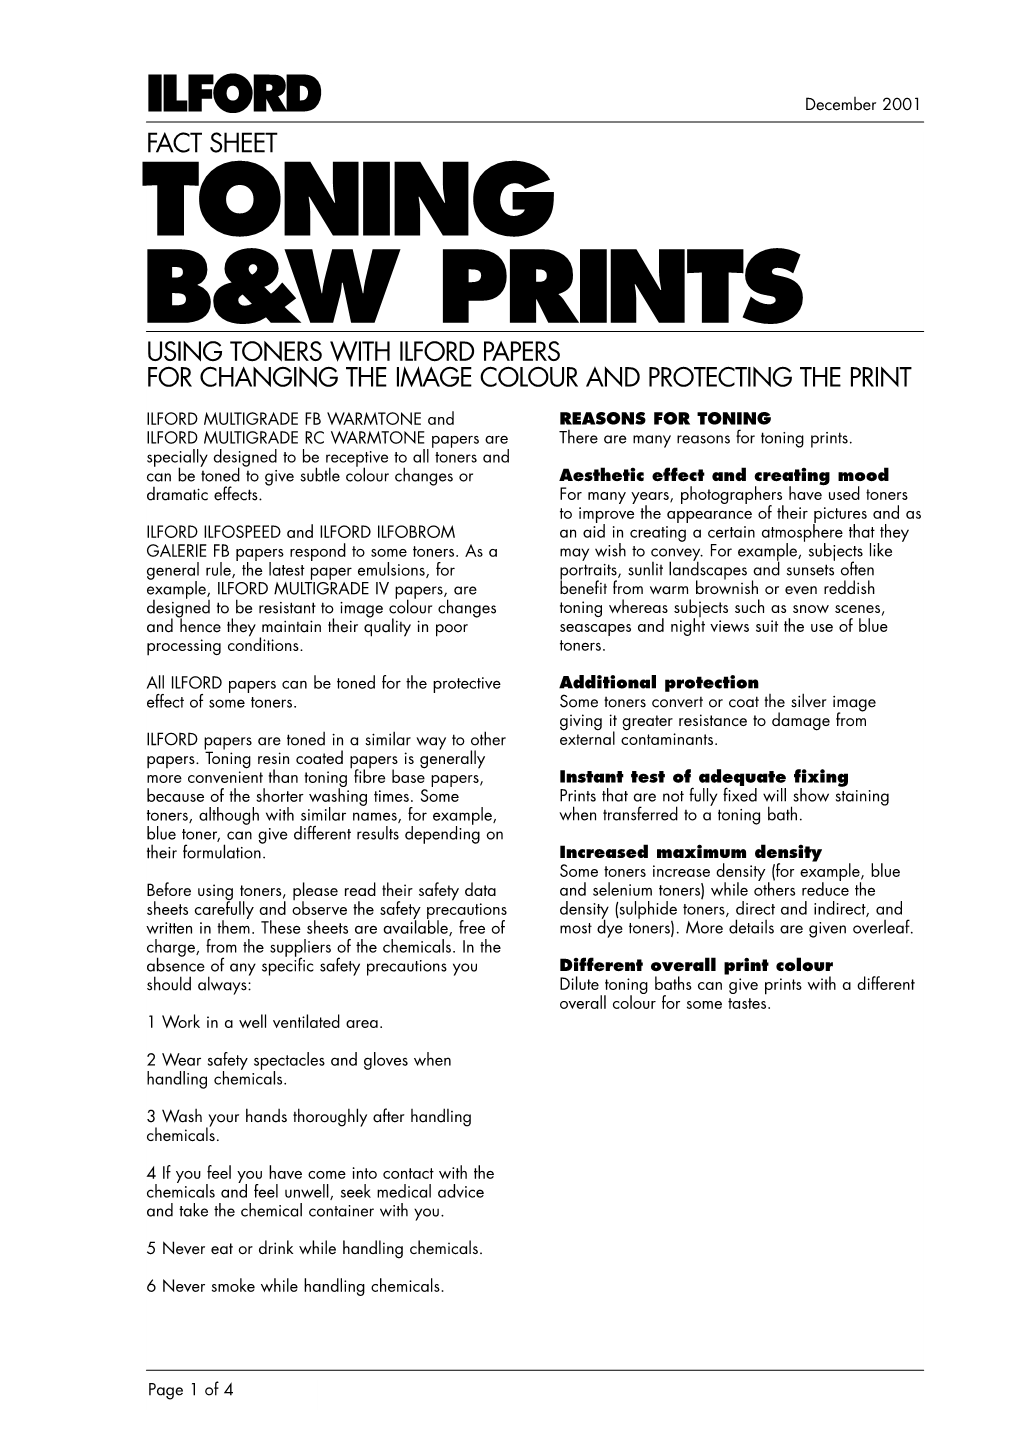 Toning B&W Prints